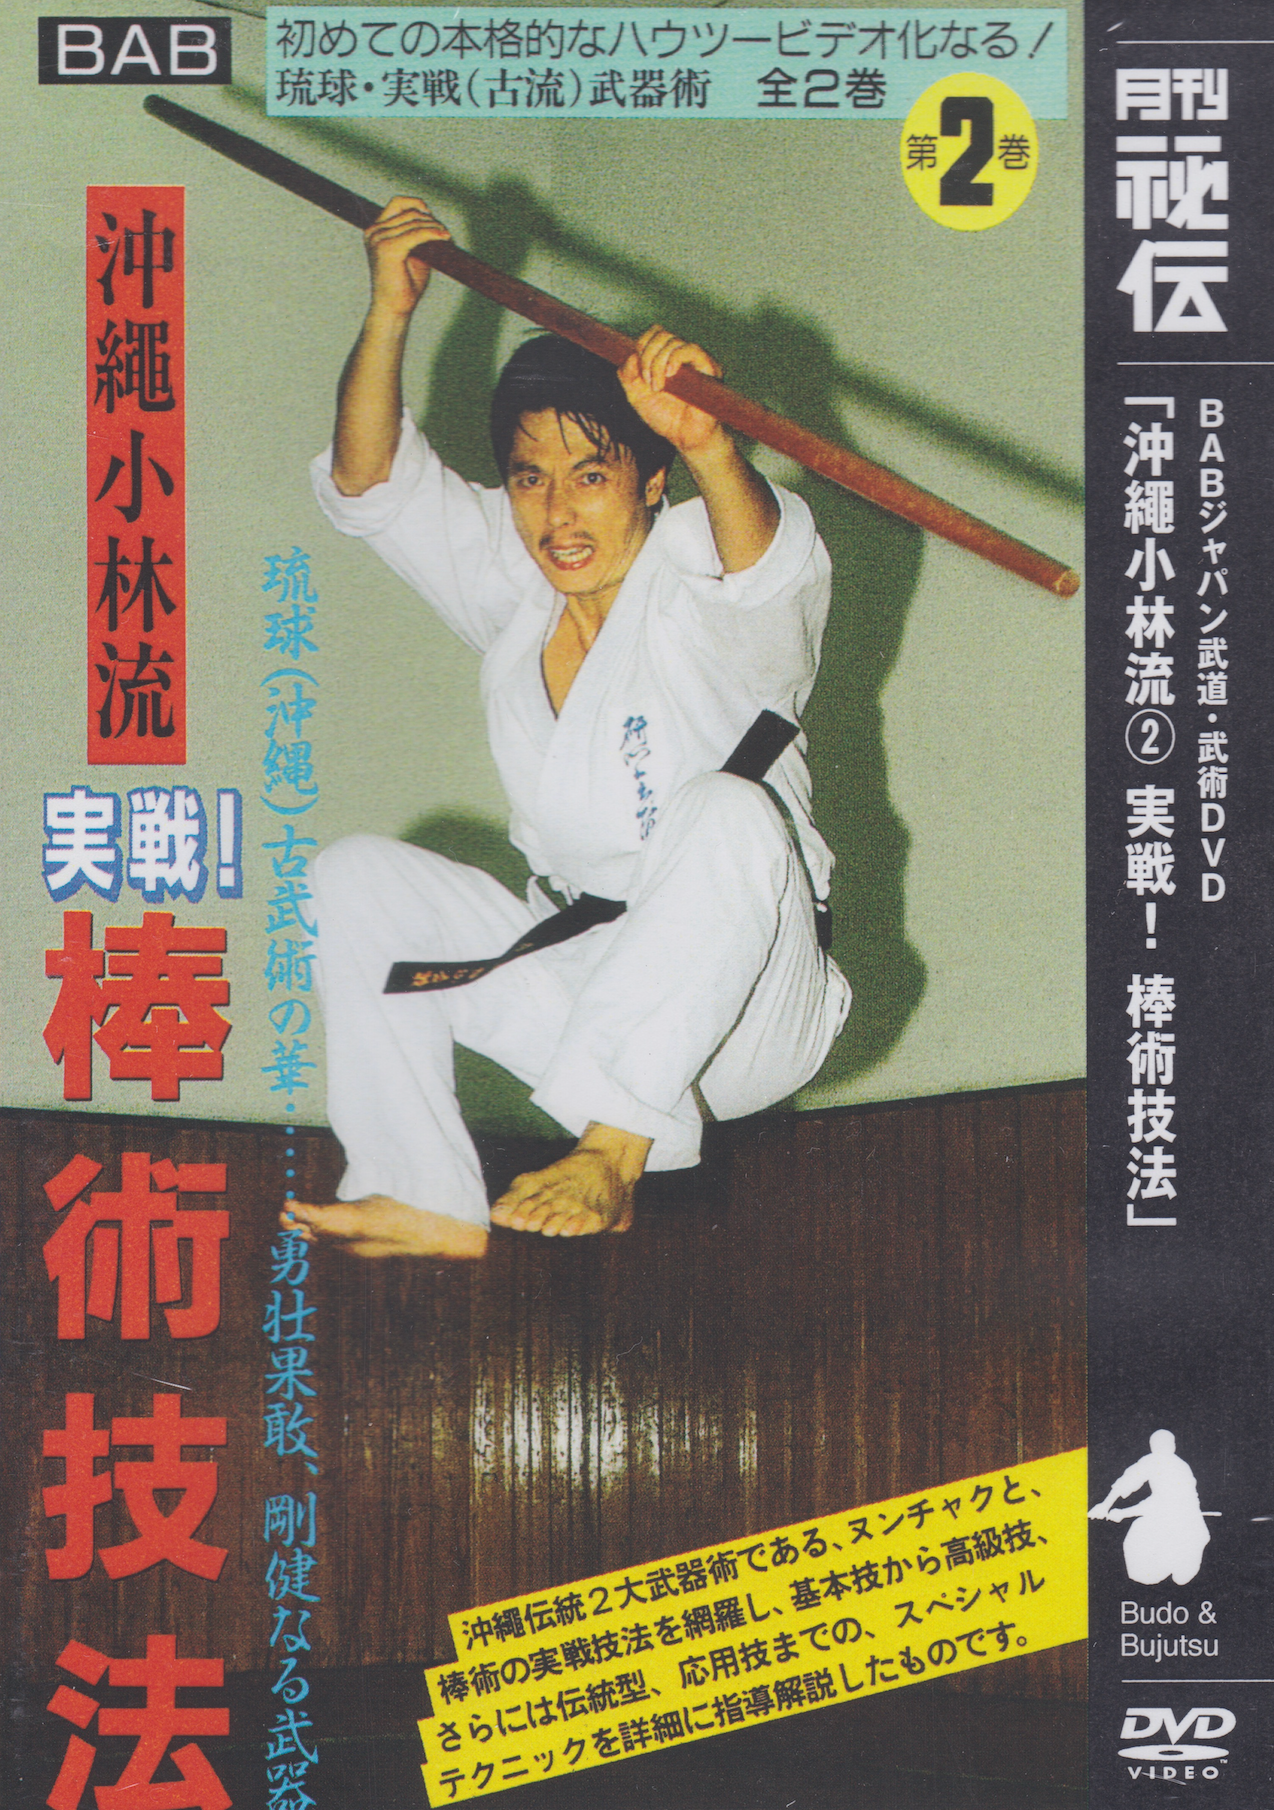 Actual Fighting: Art of Bo Fighting DVD with Kazumasa Yokoyama